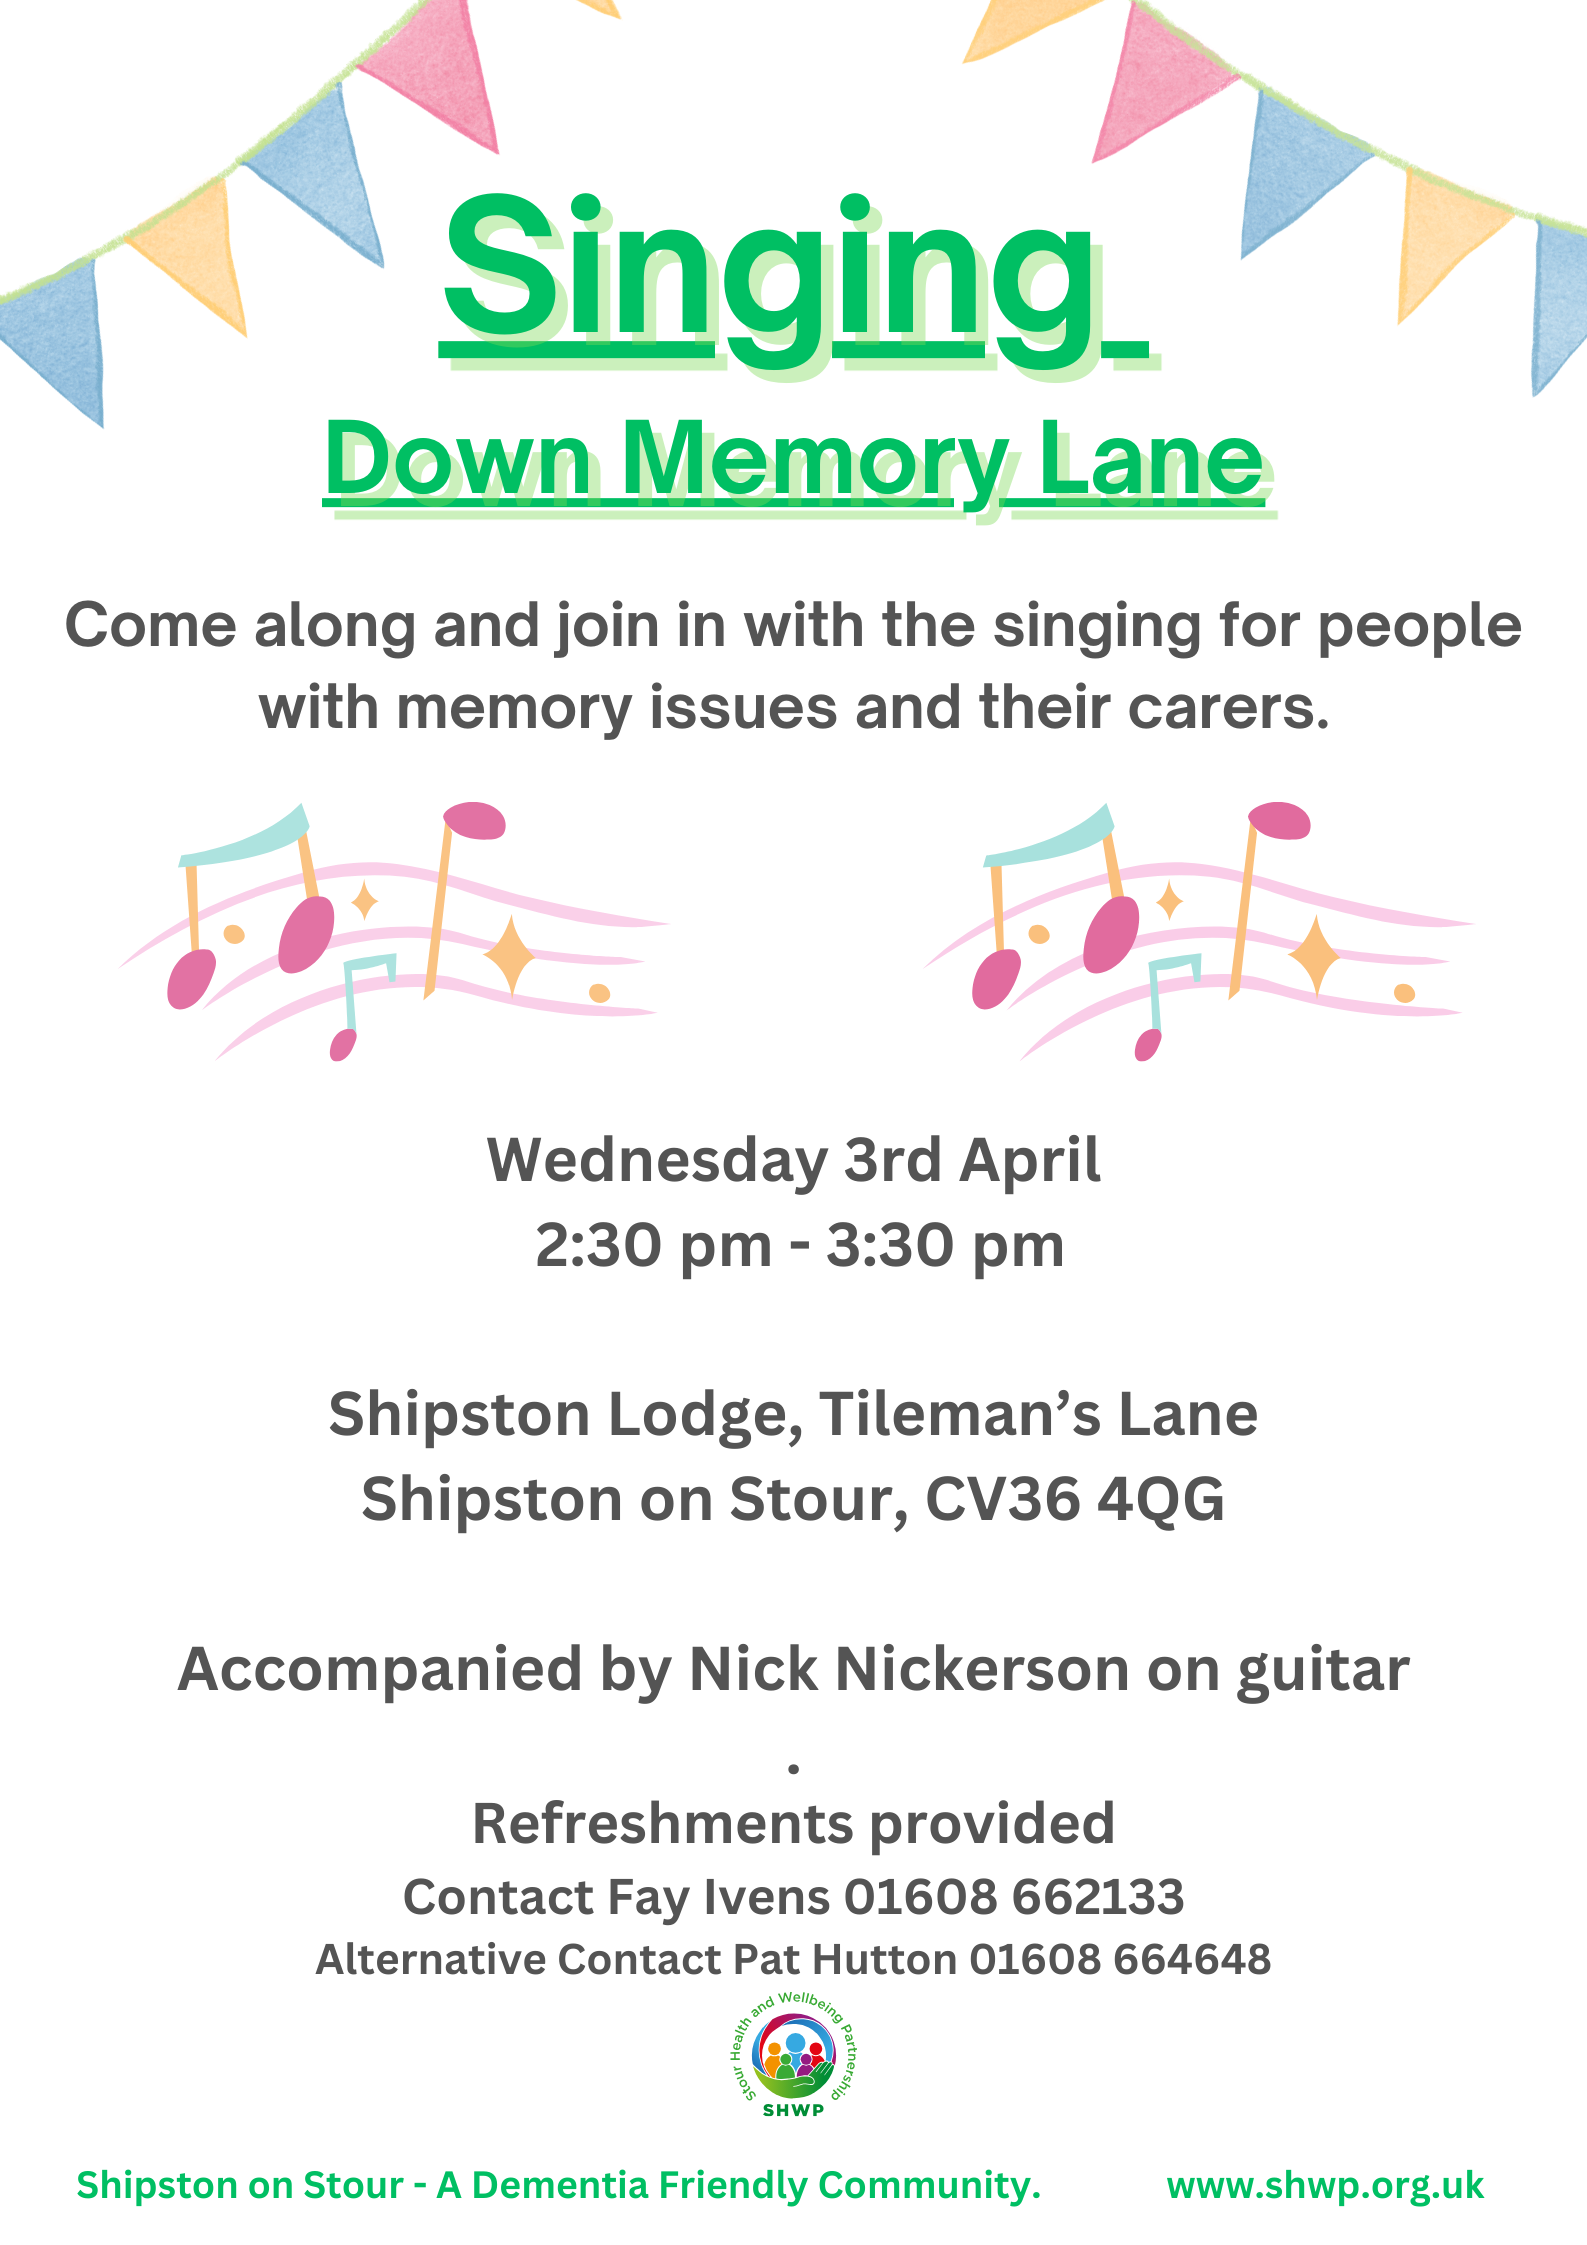 Down Memory Lane Singing at Shipston Lodge on Wednesday 3 April